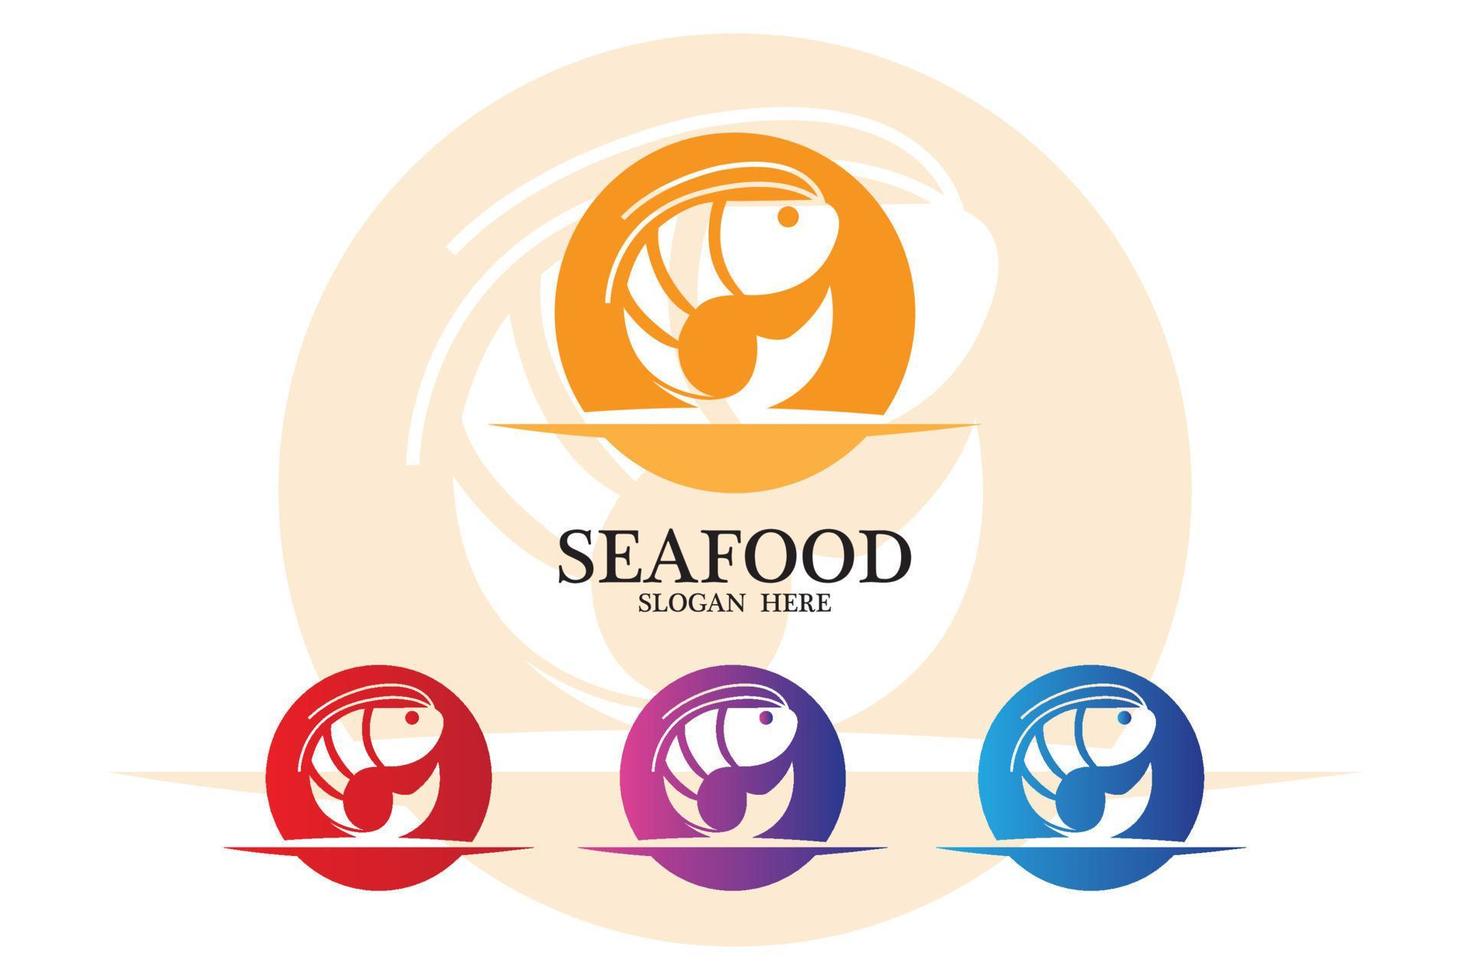 Garnelen-Meeresfrüchte-Logo-Vektorsymbol, Hummertier, klassisches Retro-Design vektor